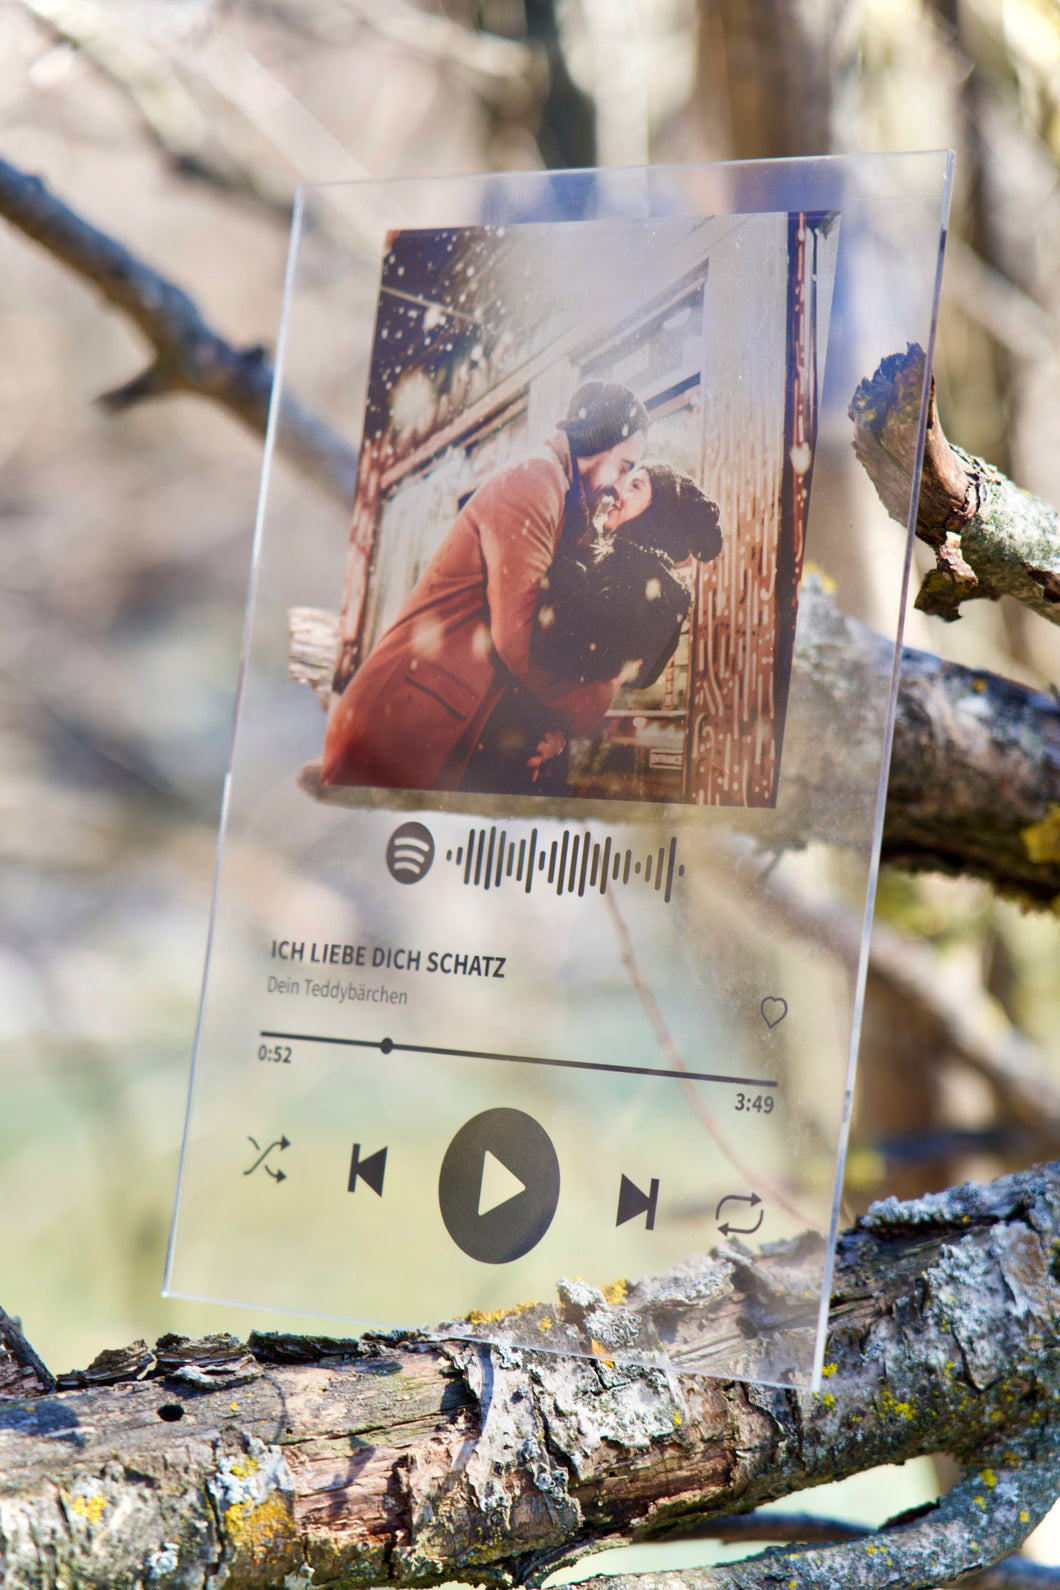 Spotify Album Glas Cover Bild erstellen Geschenk Playlist Schweiz Freund Freundin Weihnachten Valentinstag Paar